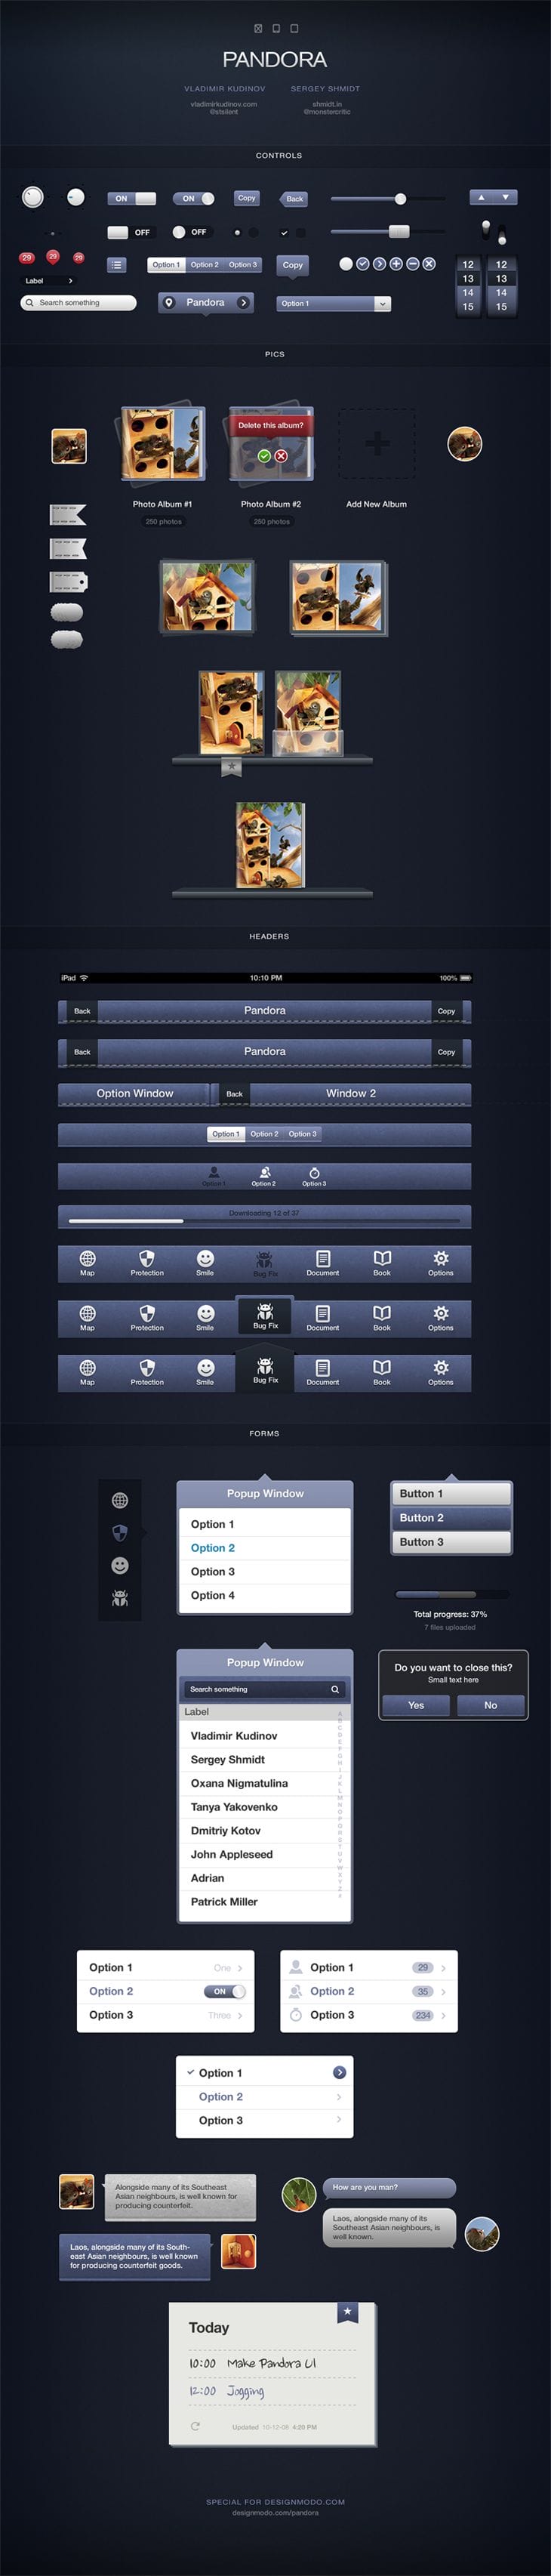 Pandora UI for iOS